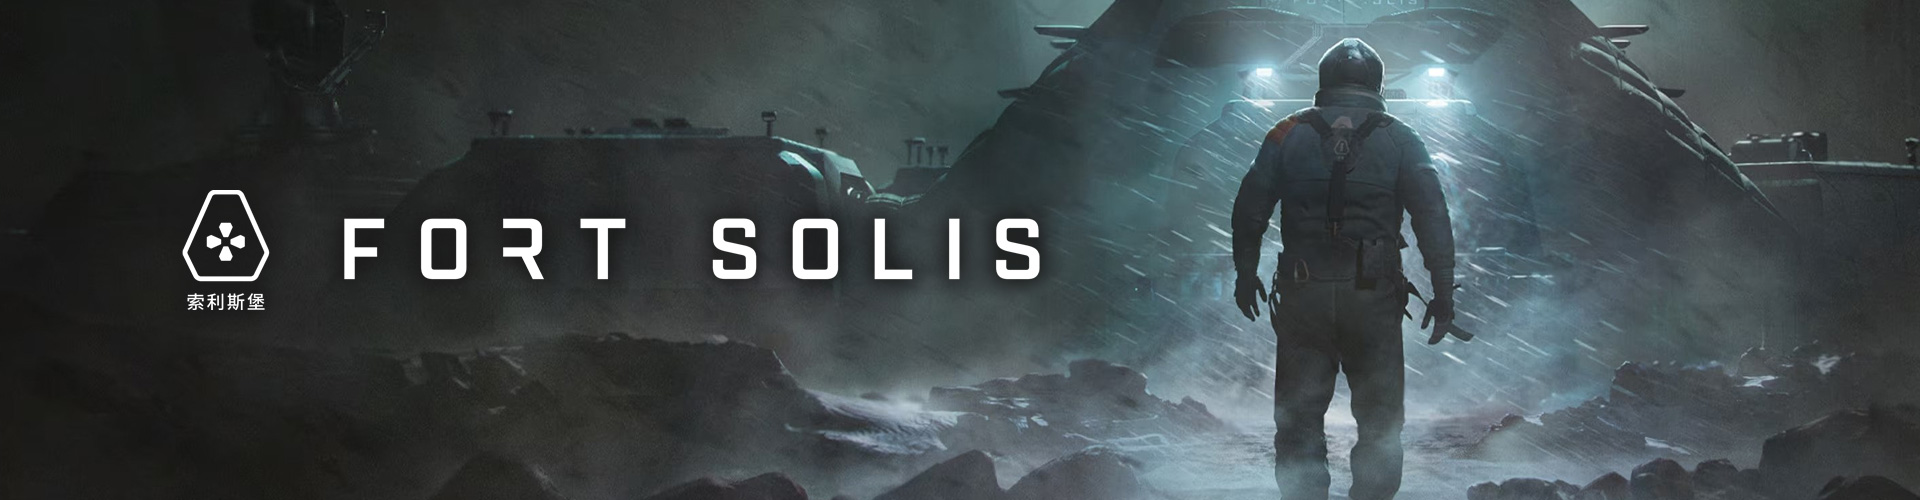 Fort Solis est un thriller dâhorreur et de science fiction